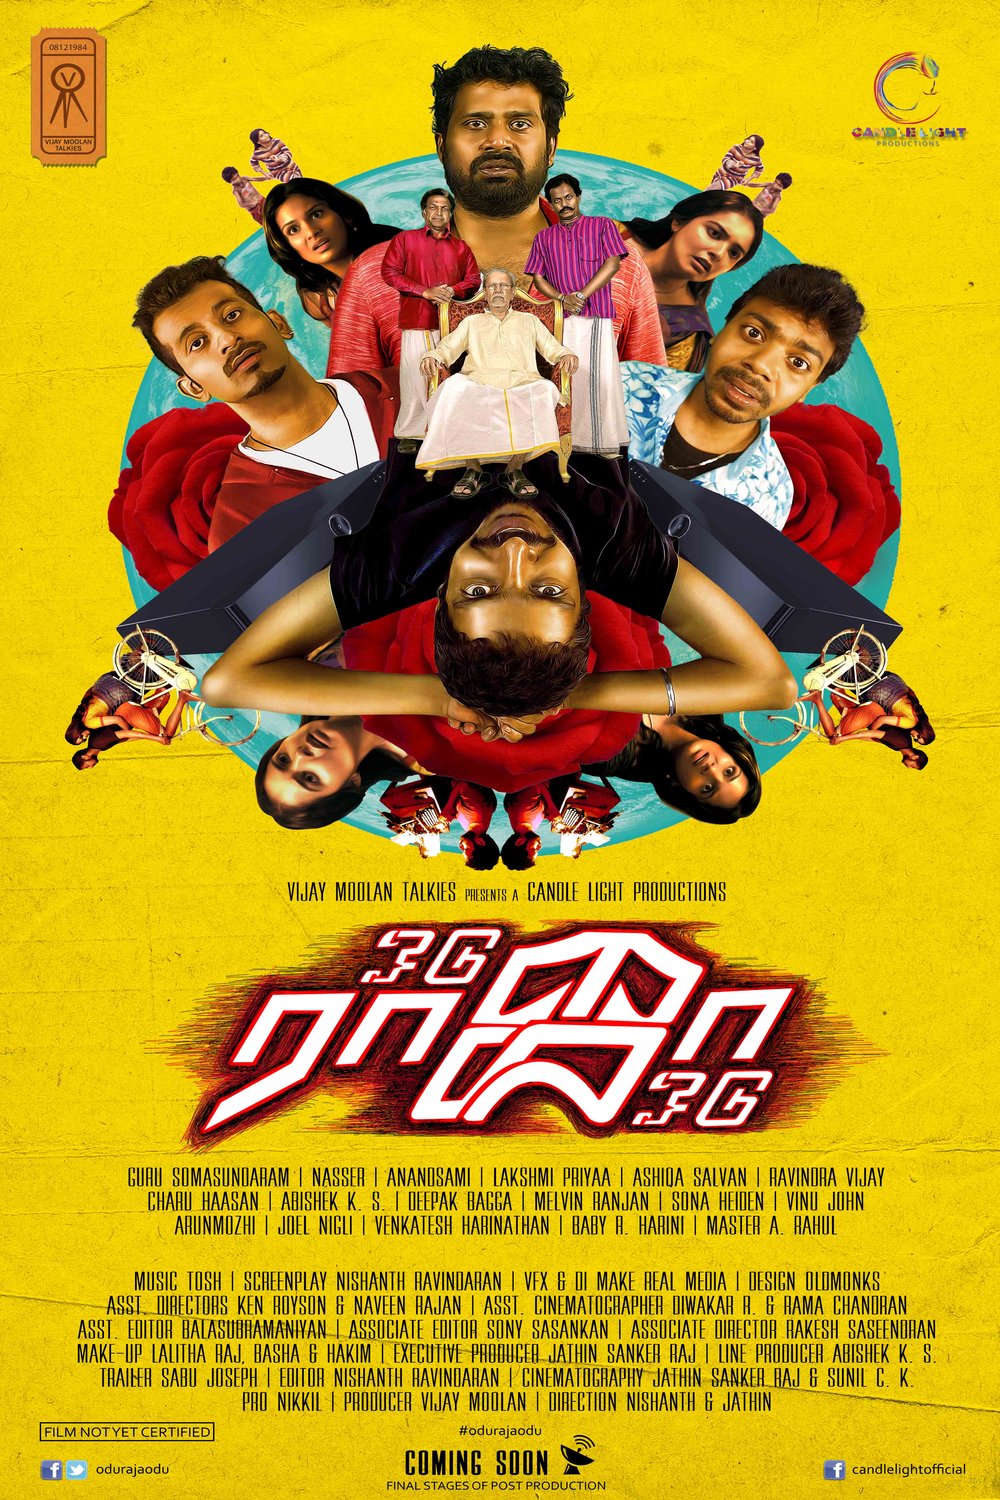 Tamil poster of the movie Odu Raja Odu